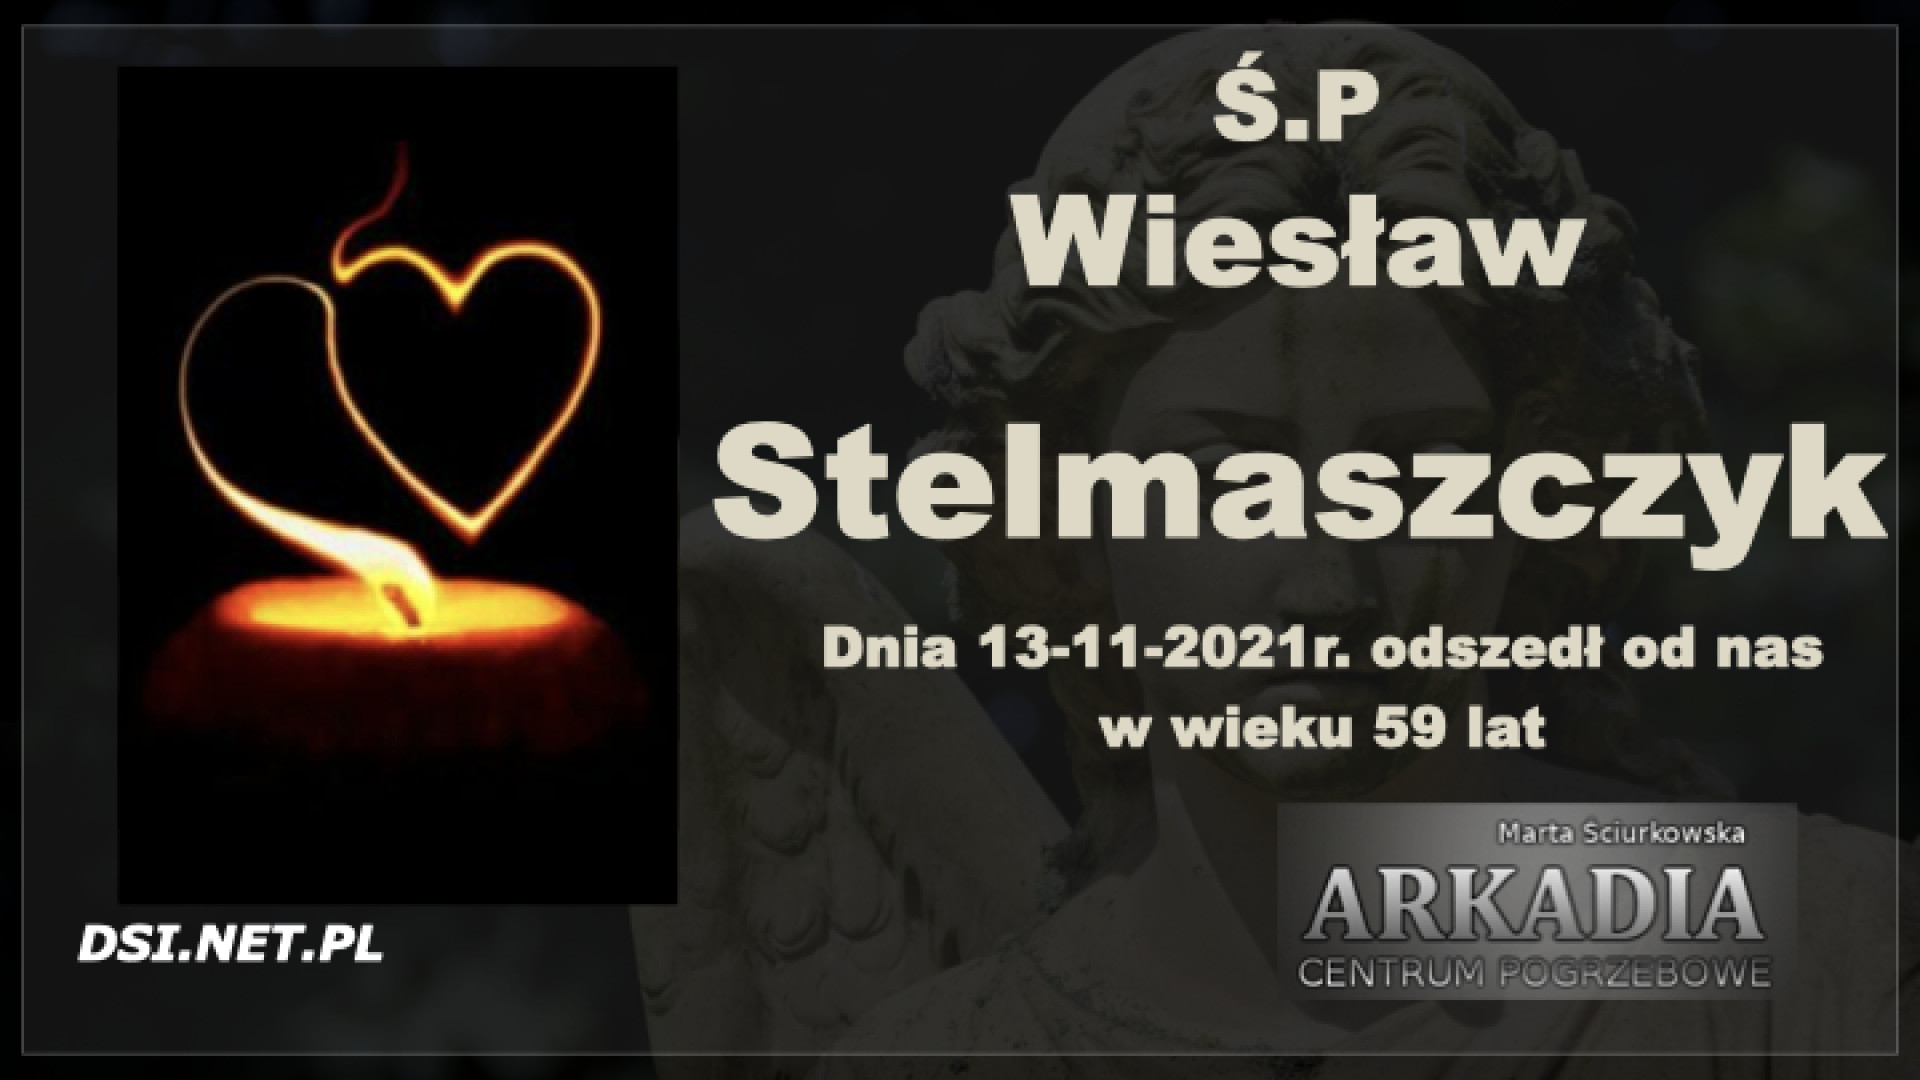 Ś.P. Wiesław Stelmaszczyk